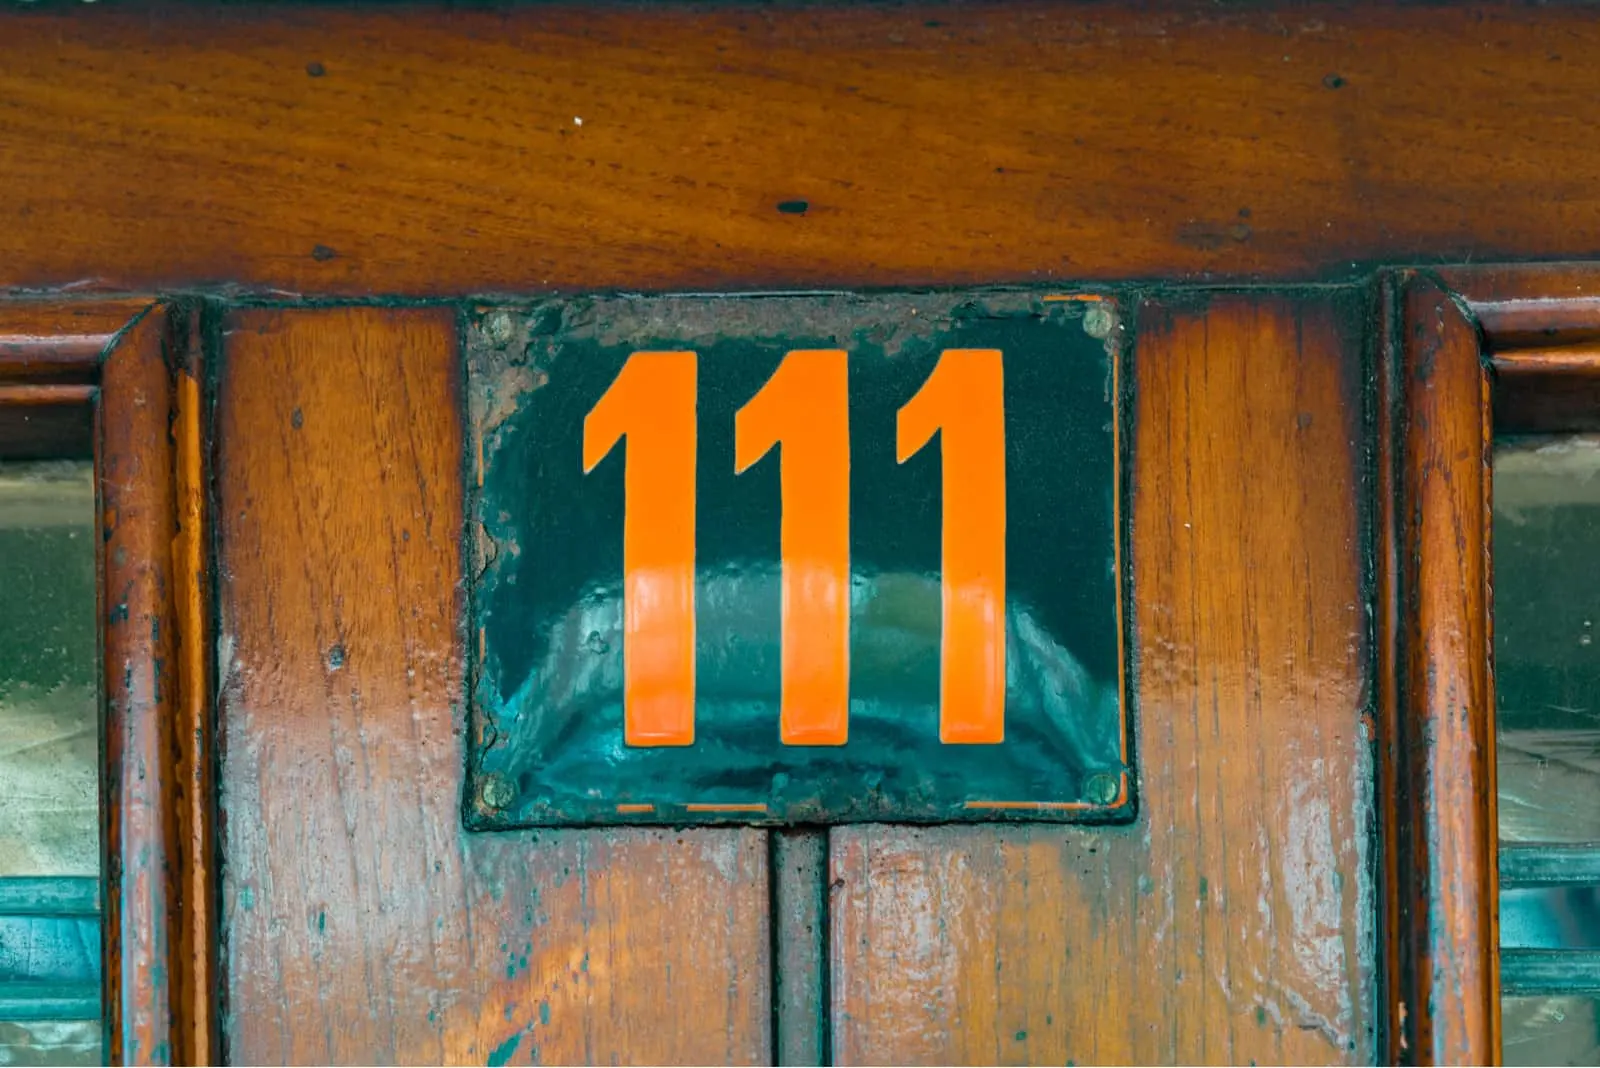 number 111 on a wooden door